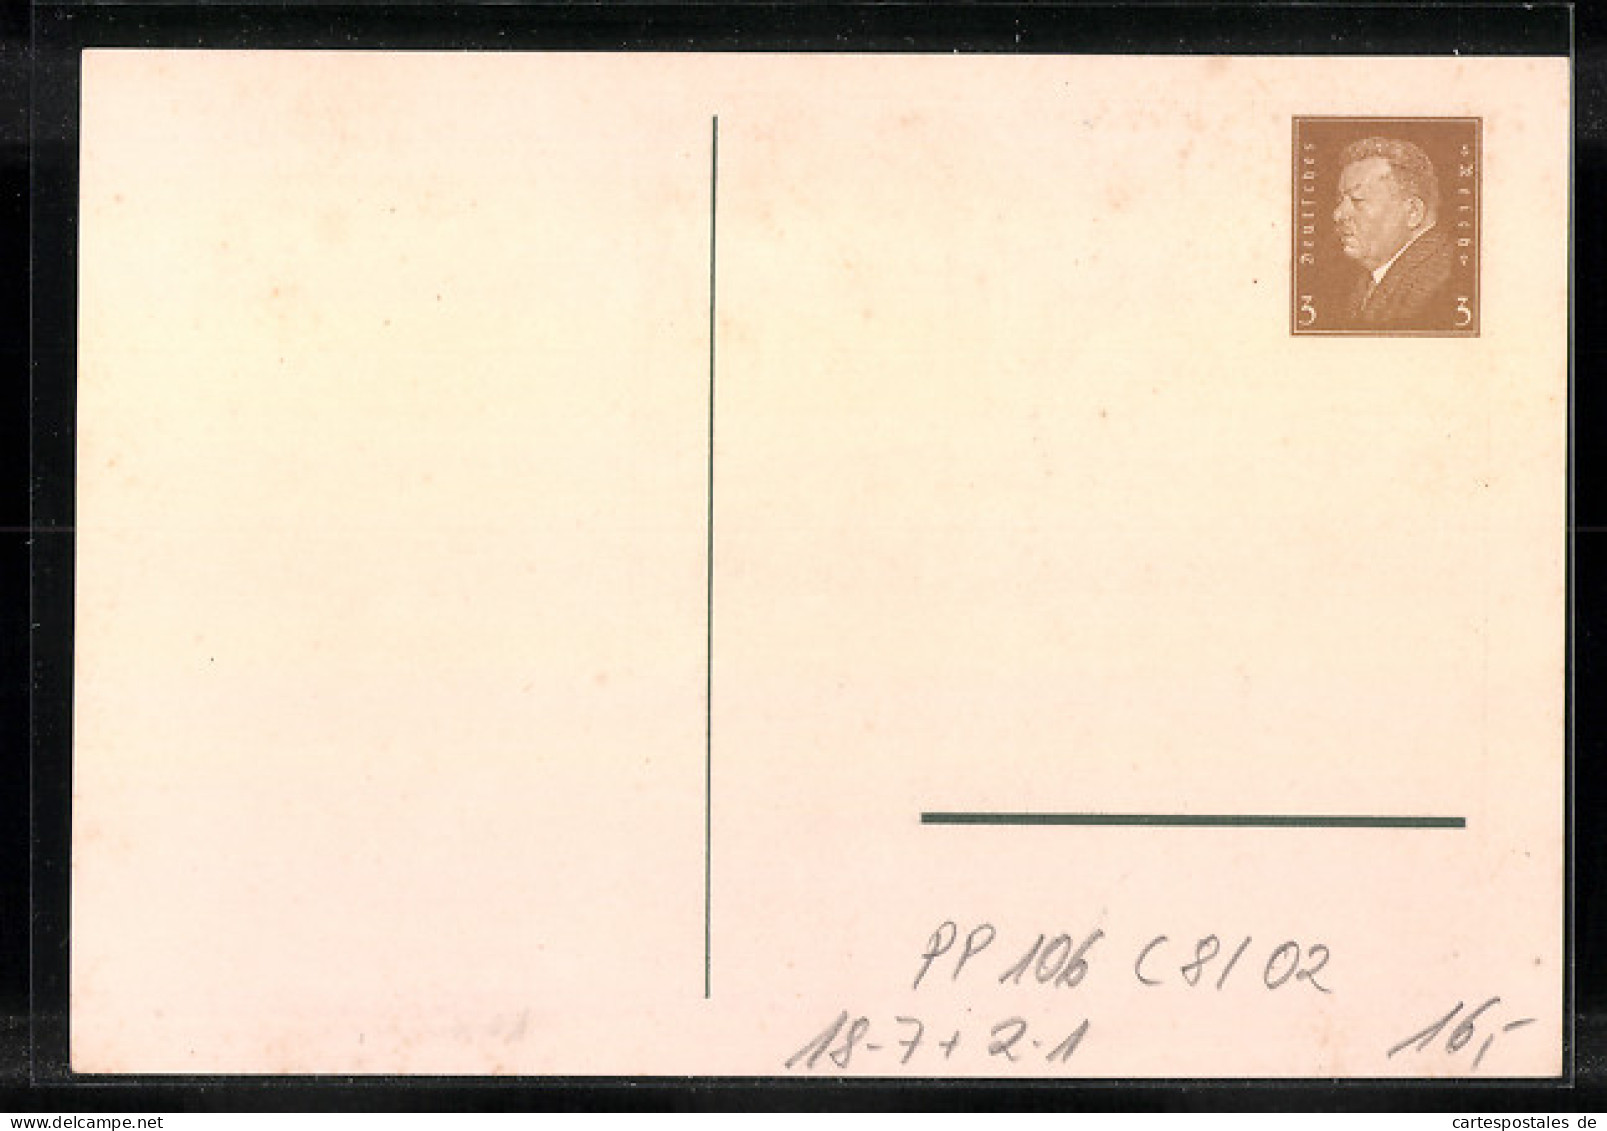 Künstler-AK Ganzsache PP106C8 /02: Braunschweig, 8. Bundestag 37. Philatelistentag 1931, Eulenspiegelbrunnen  - Briefmarken (Abbildungen)